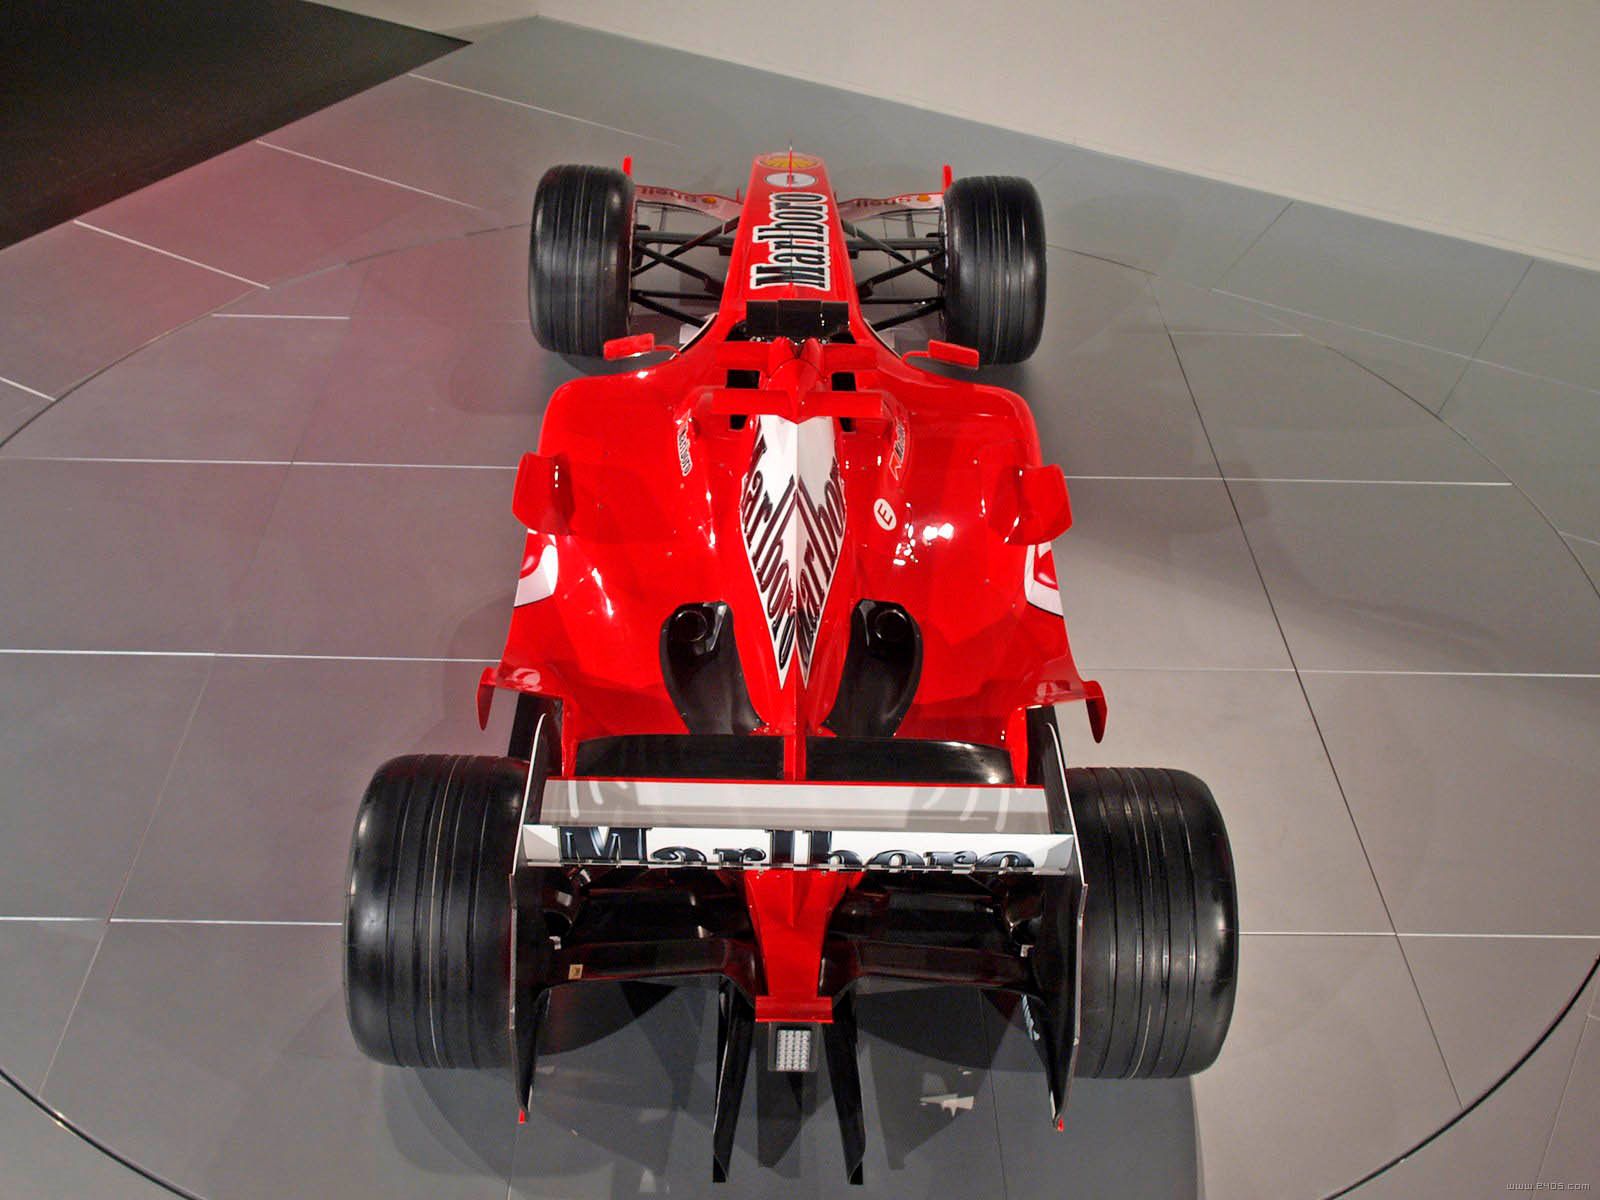 2005 Ferrari F2005